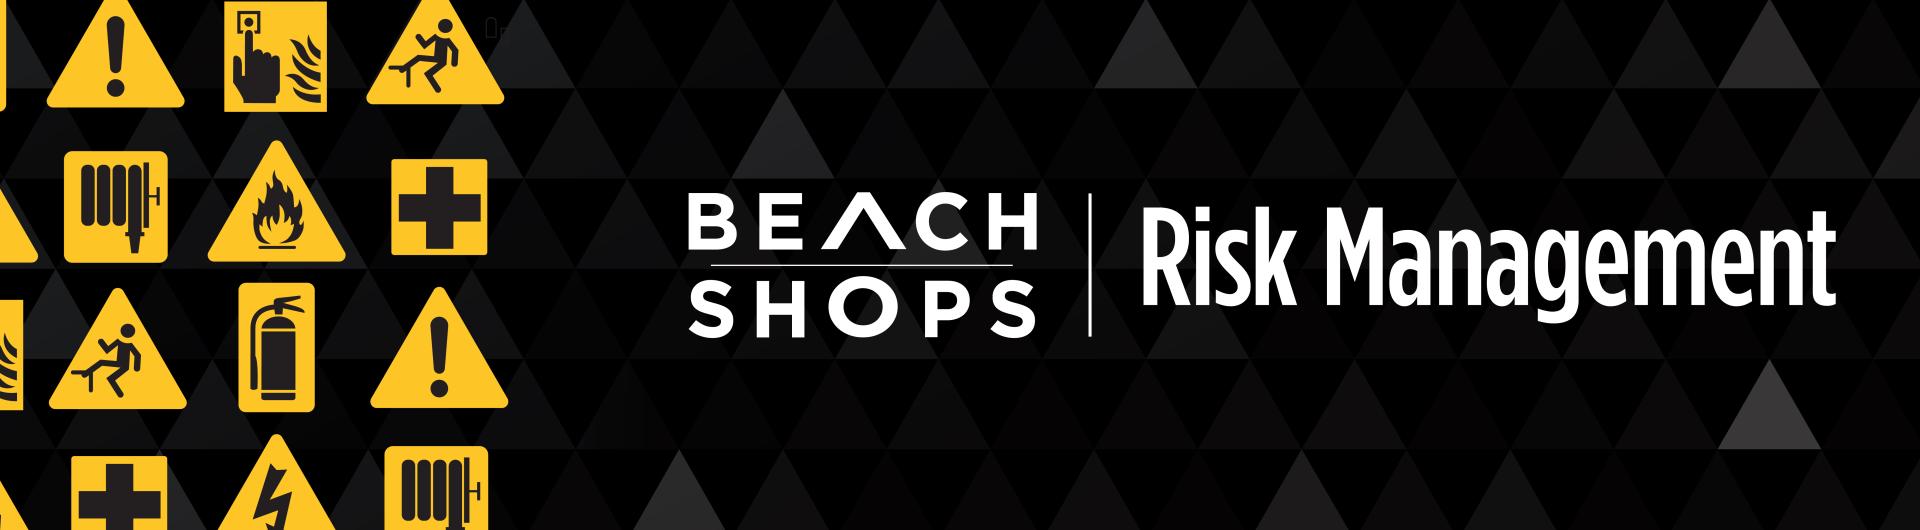 Beach Shops Risk Management